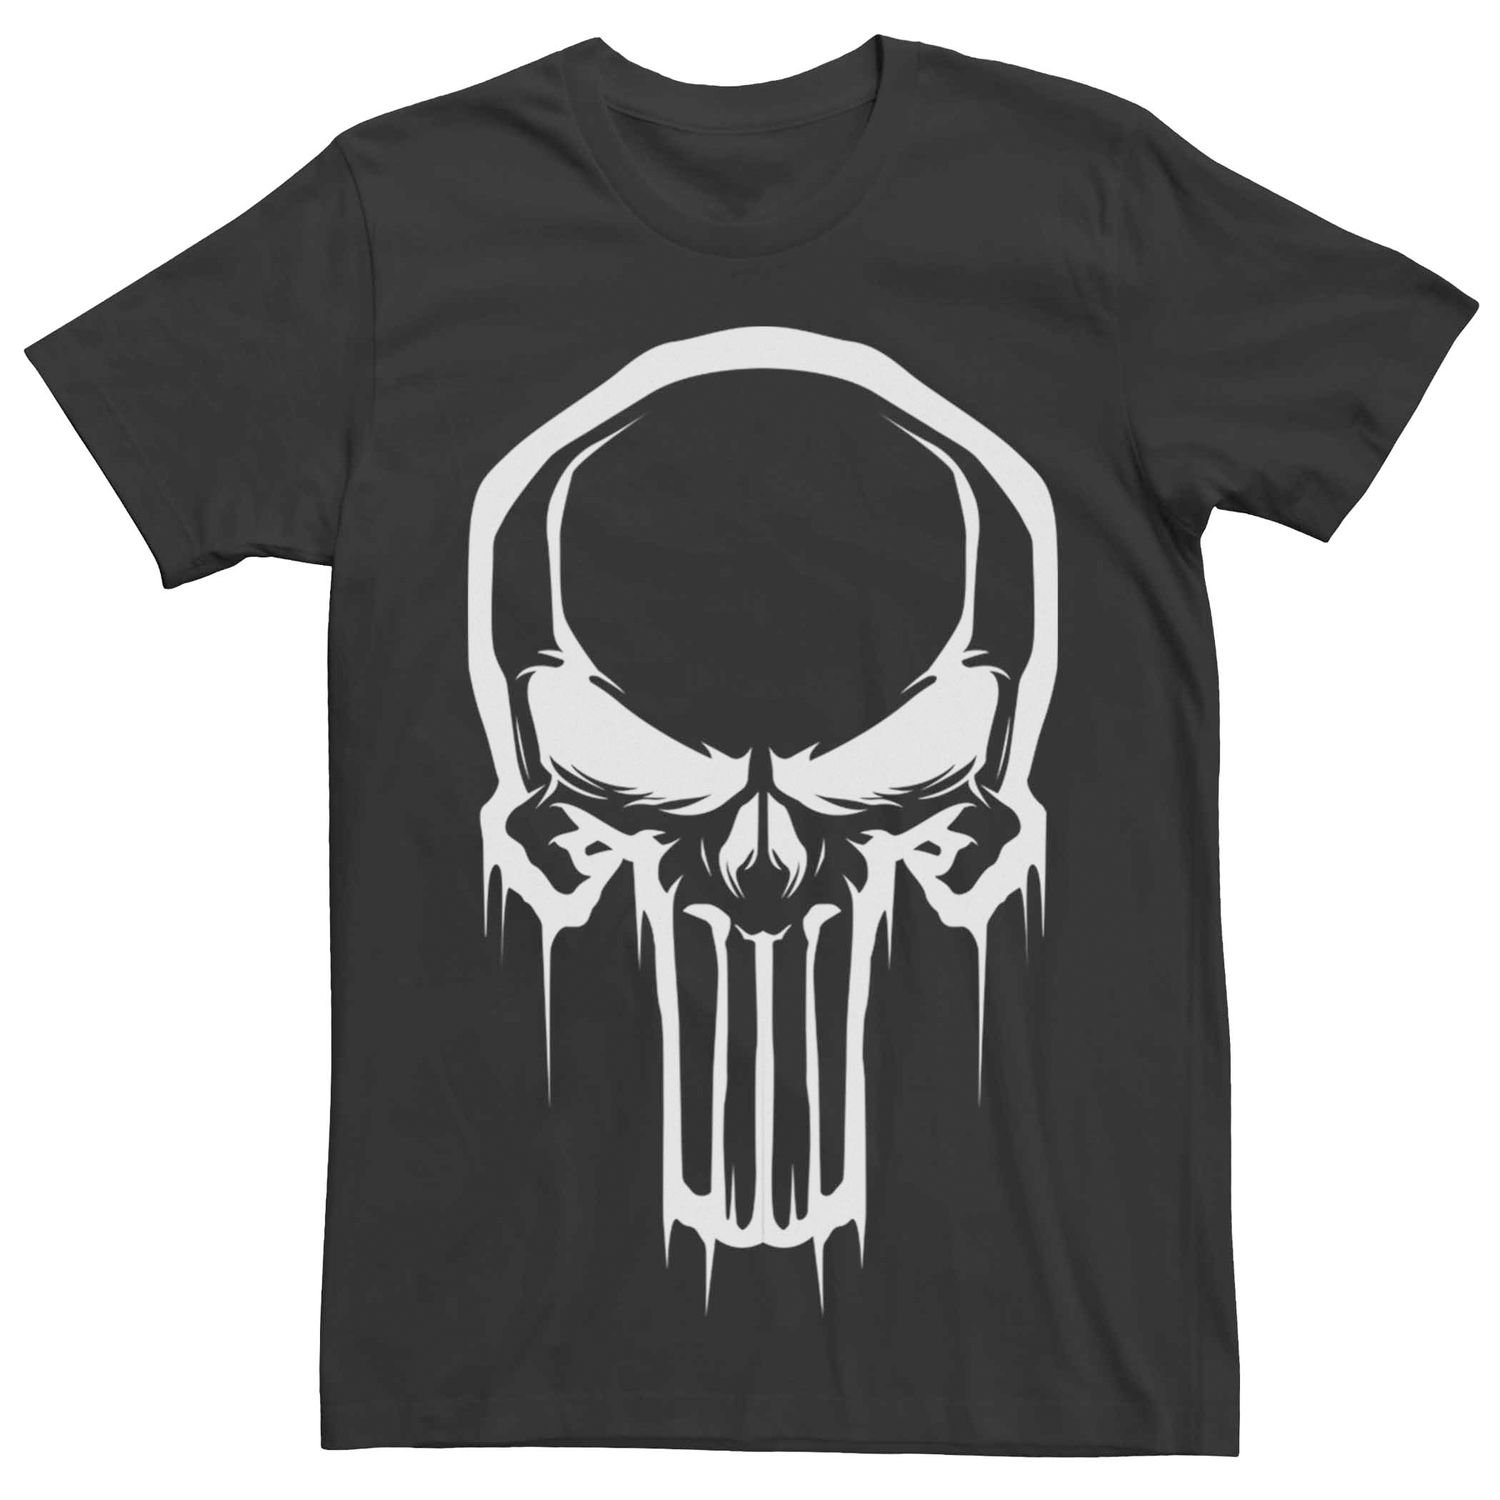 Image for Licensed Character Men's Marvel's The Punisher Skull Drip Logo Tee at Kohl's.